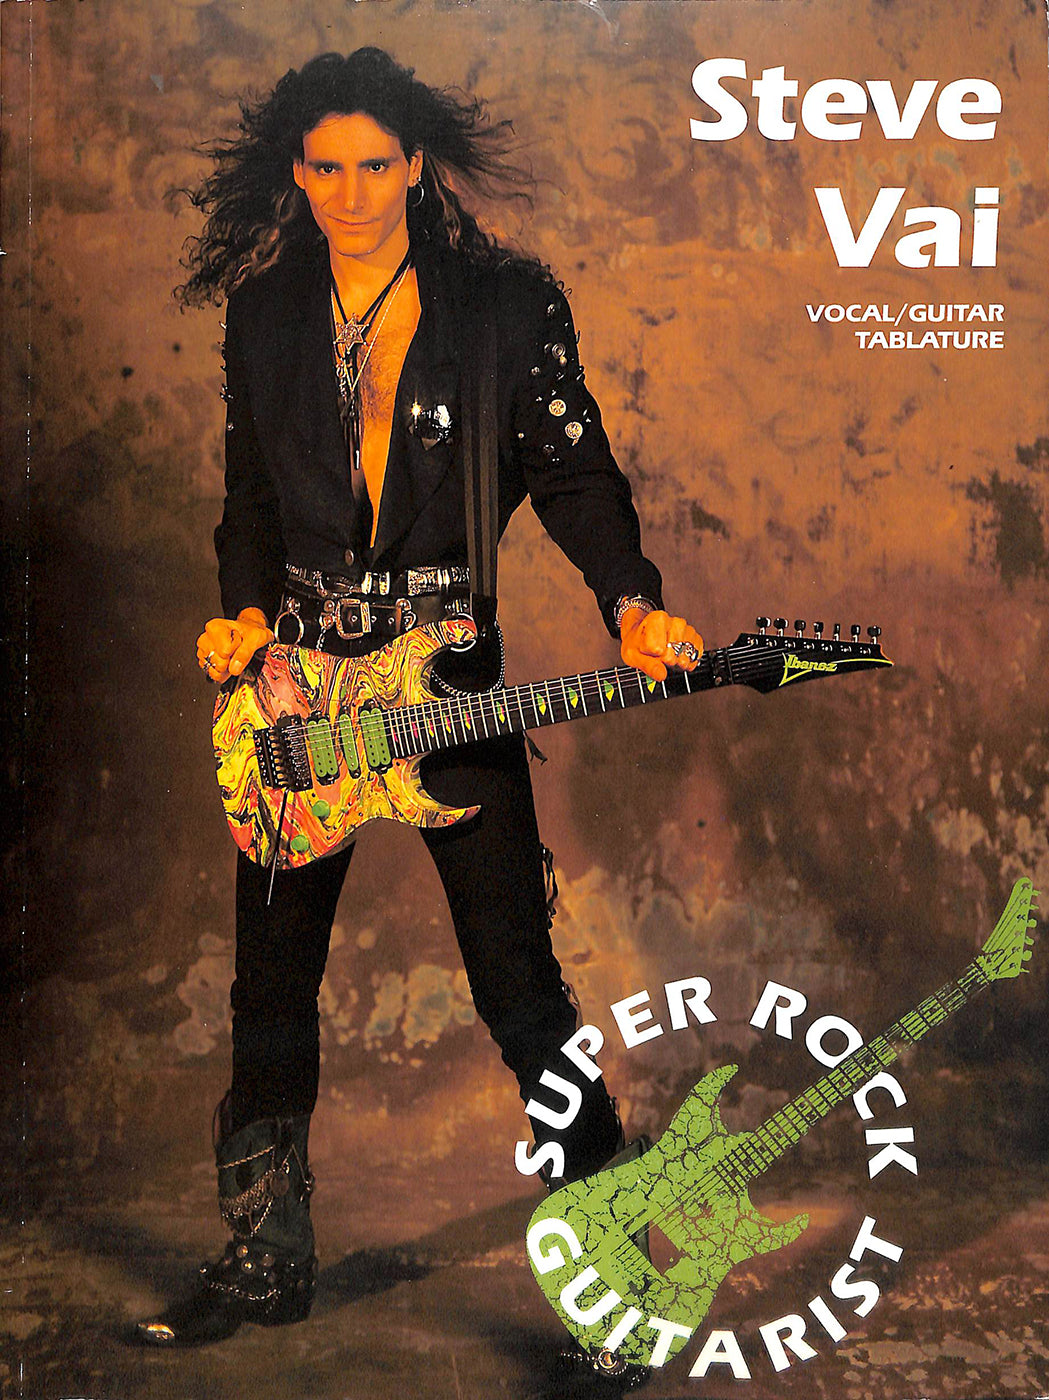 STEVE VAI: Vocal/guitar tablature (Super rock guitarist) [ギター楽譜] スティーヴ・ヴァイ